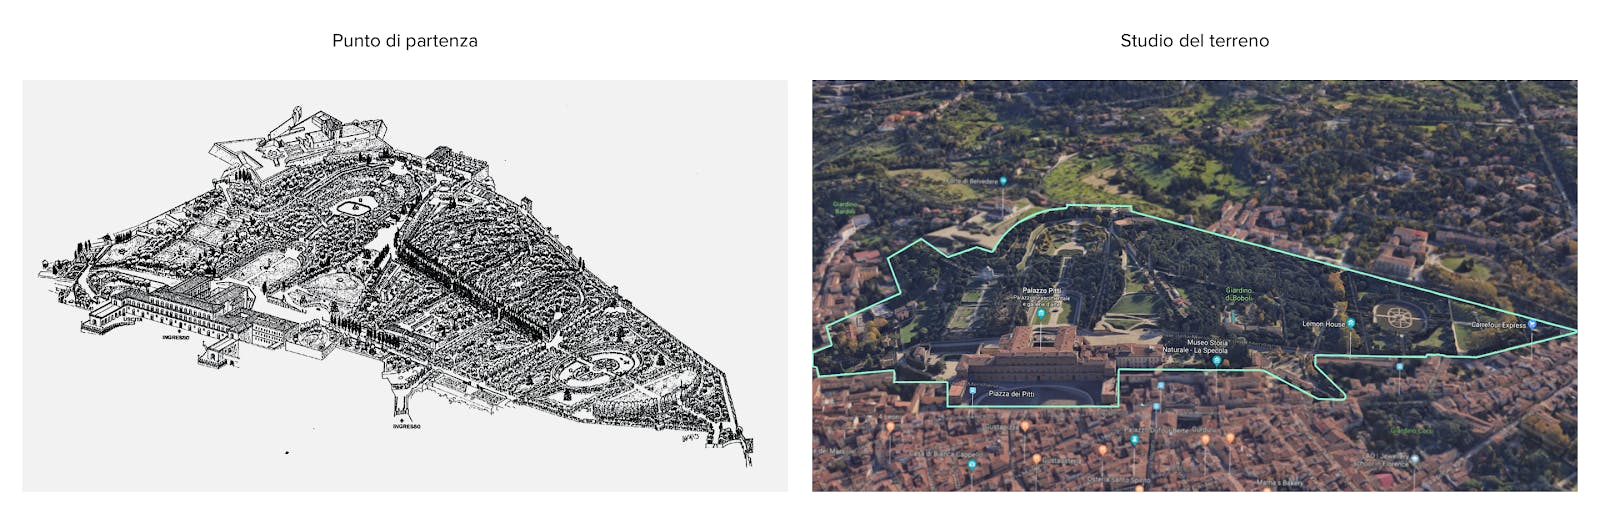 Una vista aerea del terreno del Giardino di Boboli e una mappa d'epoca